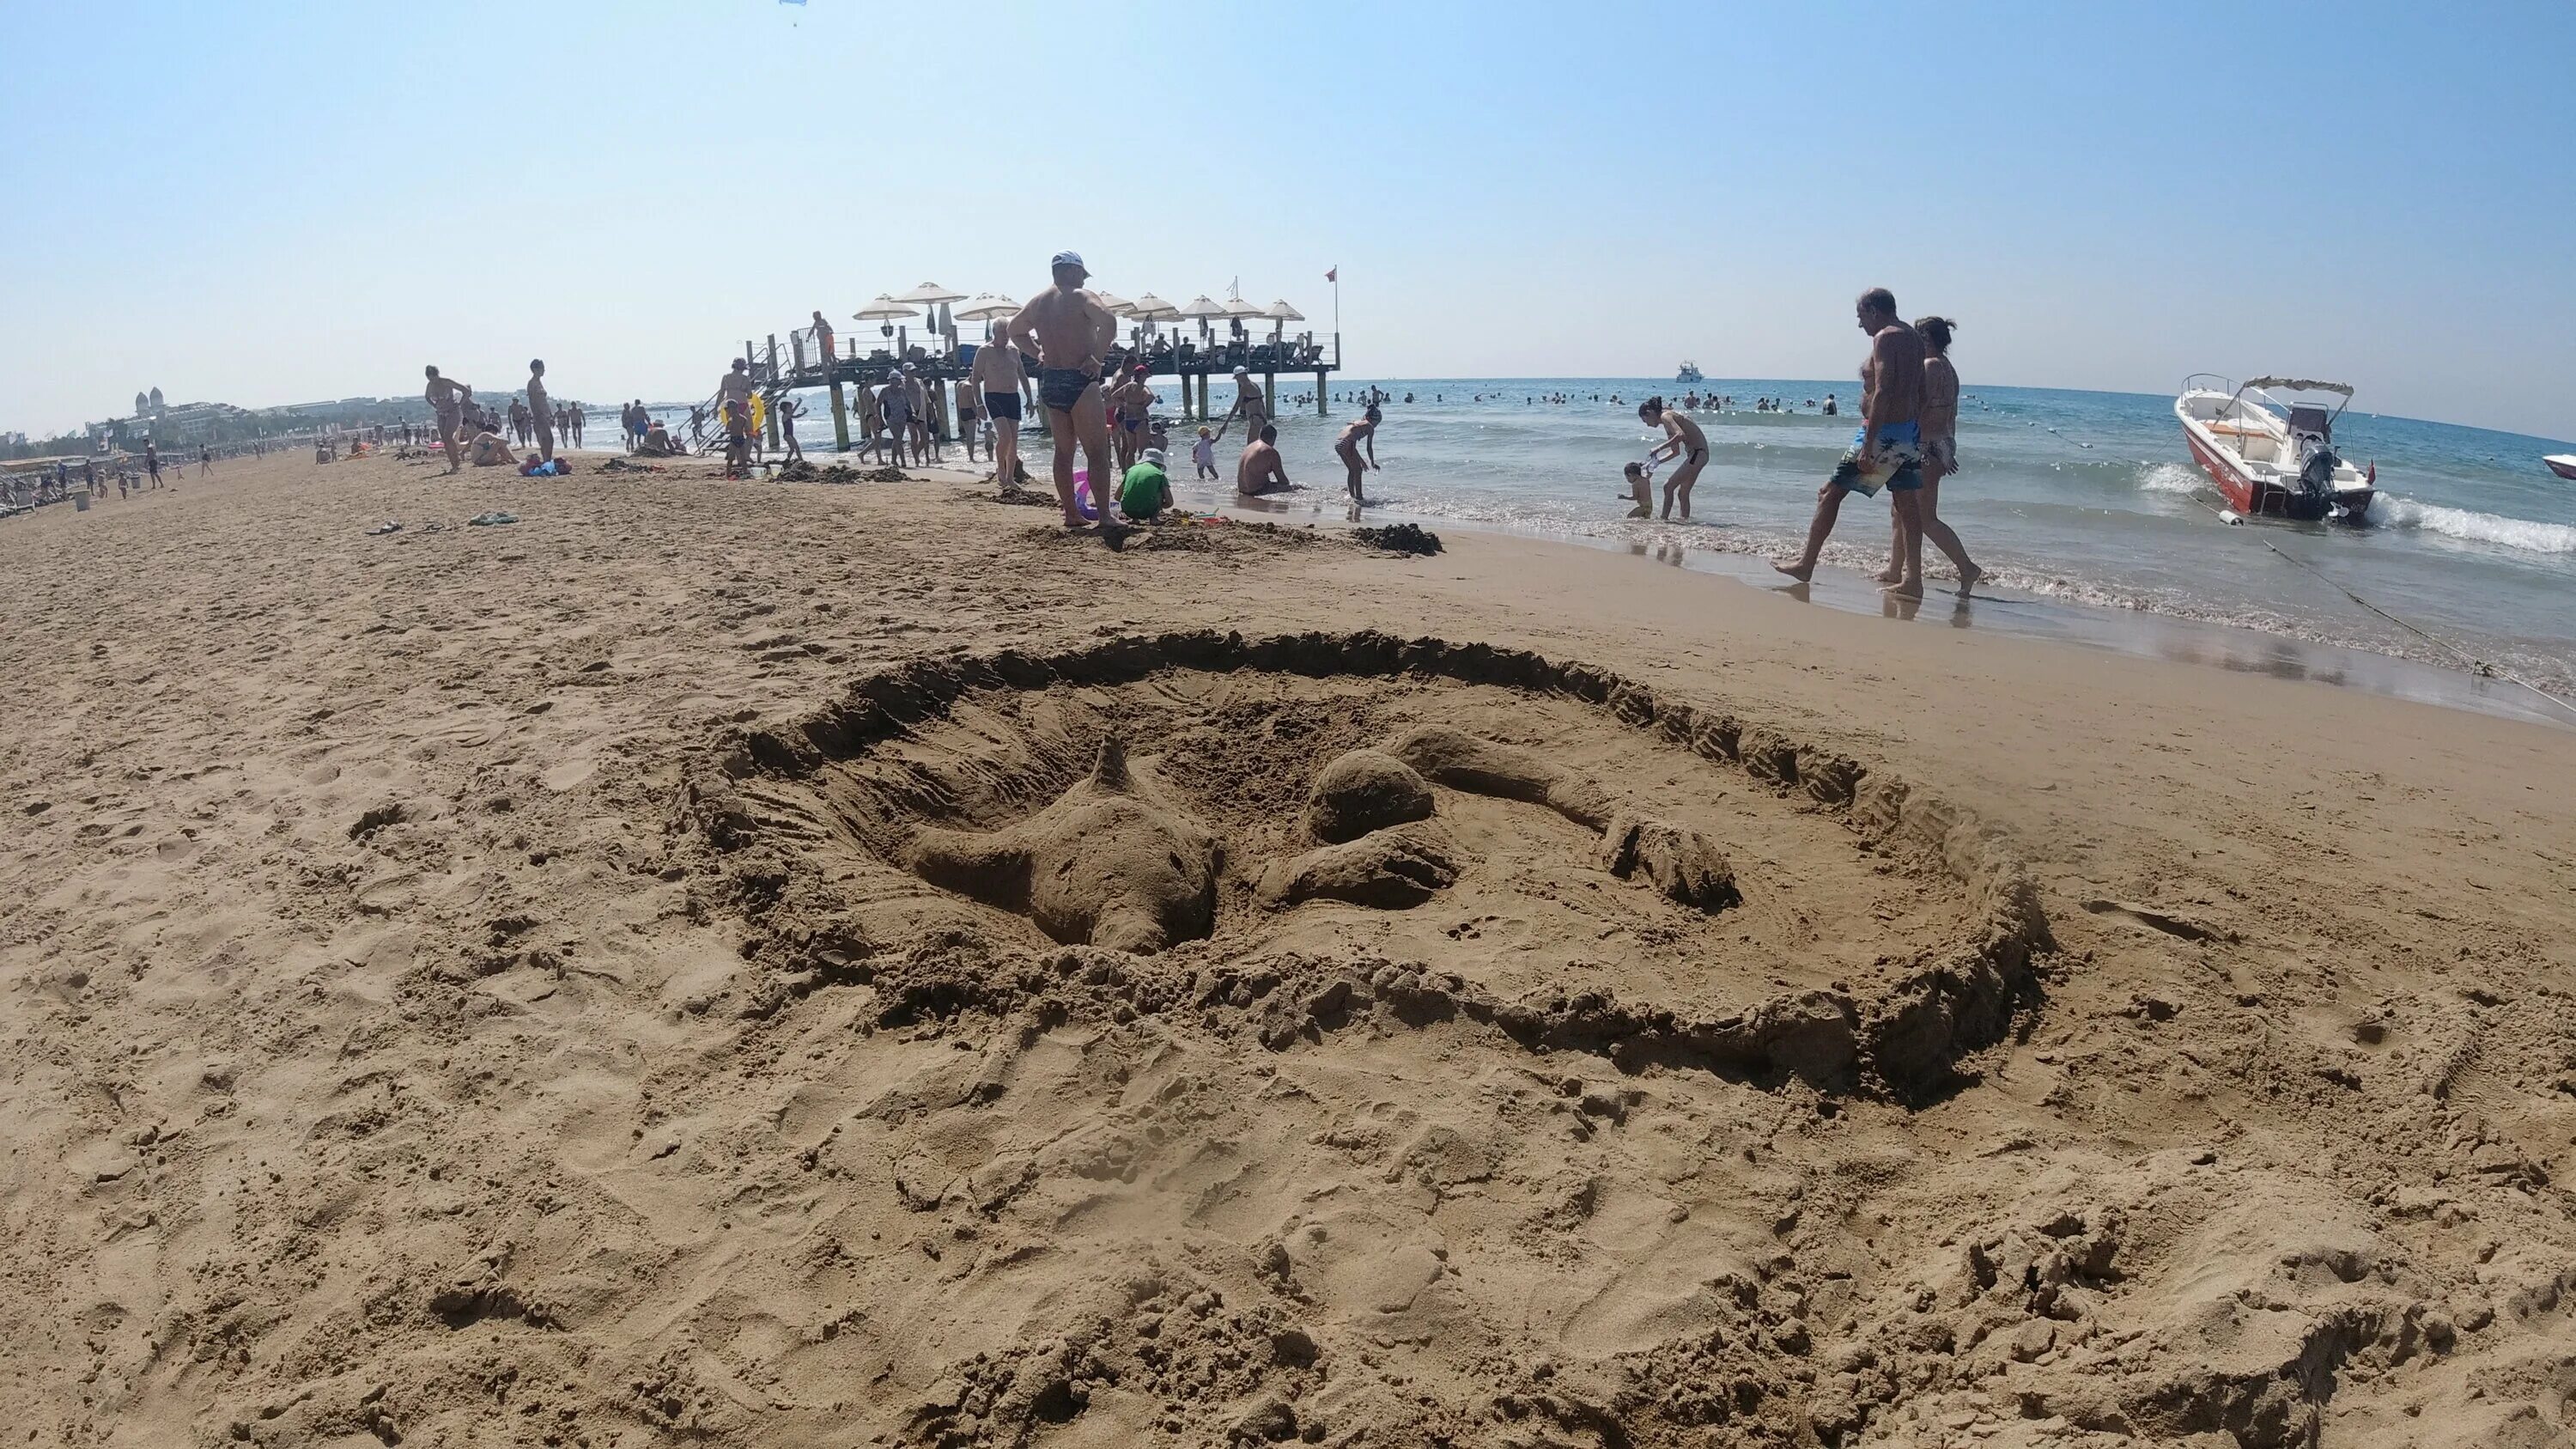 Песчаные пляжи Турции. Песочные пляжи в Турции. Турция песочный пляж черепахи. Пляжи Турции сегодня. Турция песчаный пляж отдых с детьми